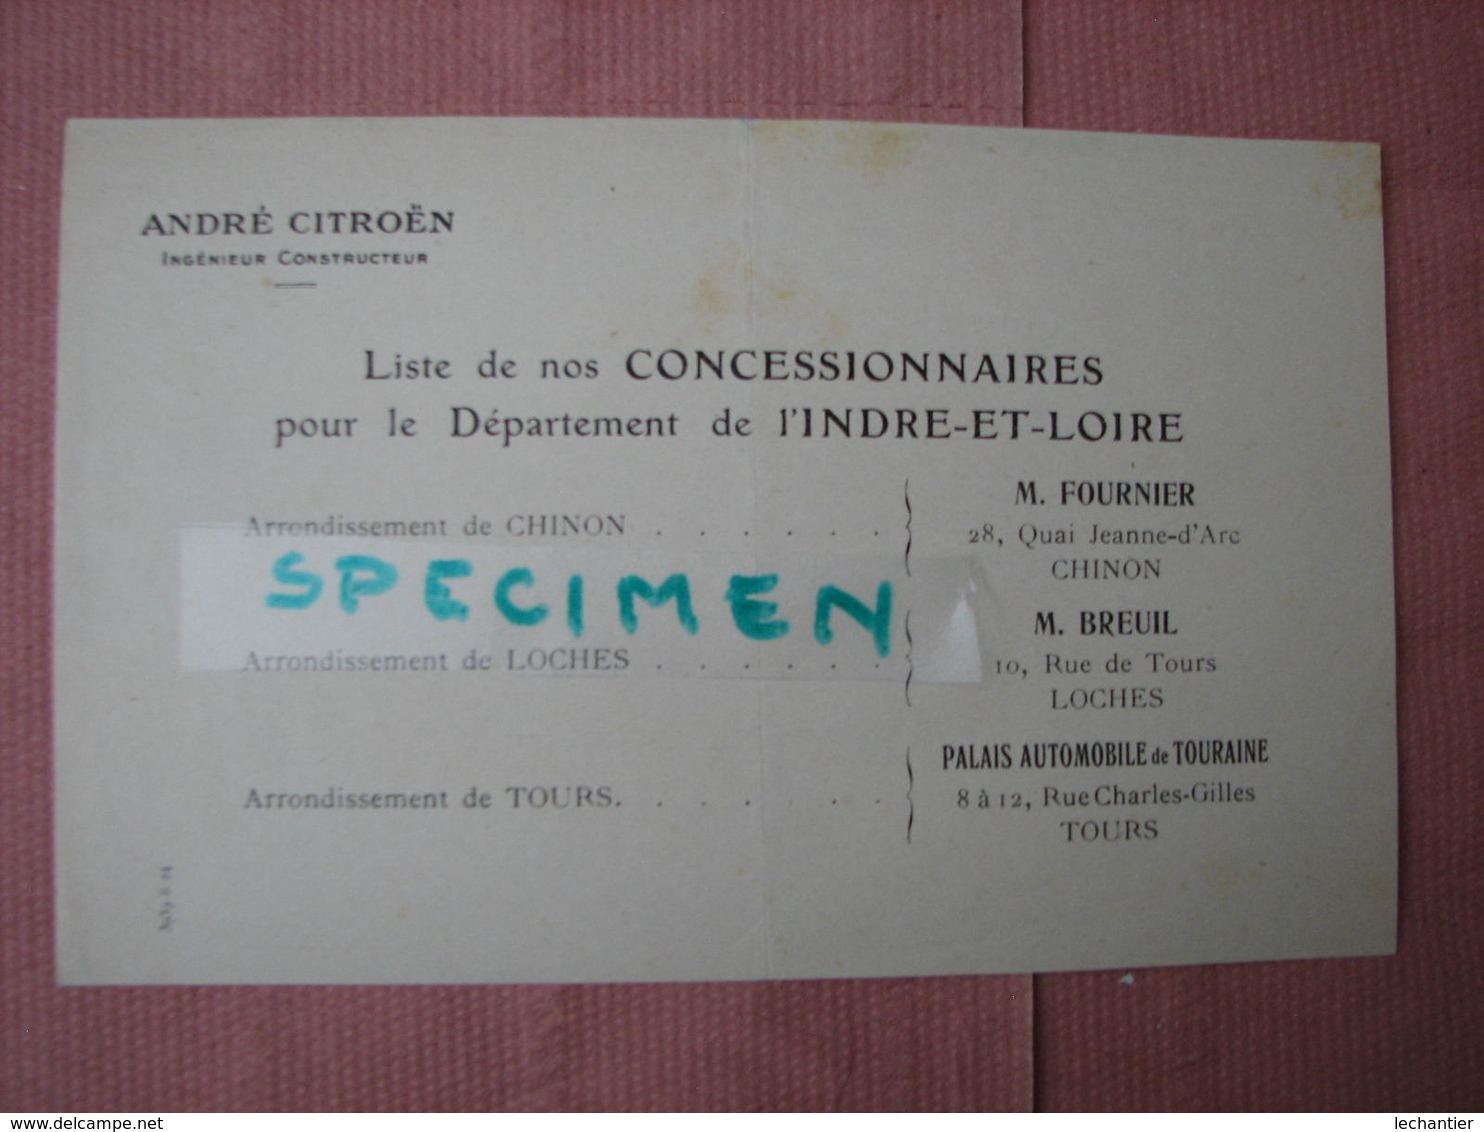 Accessoires Auto catalogue Phares, dynamos, generateur, indicateurs de vitesse etc 1924